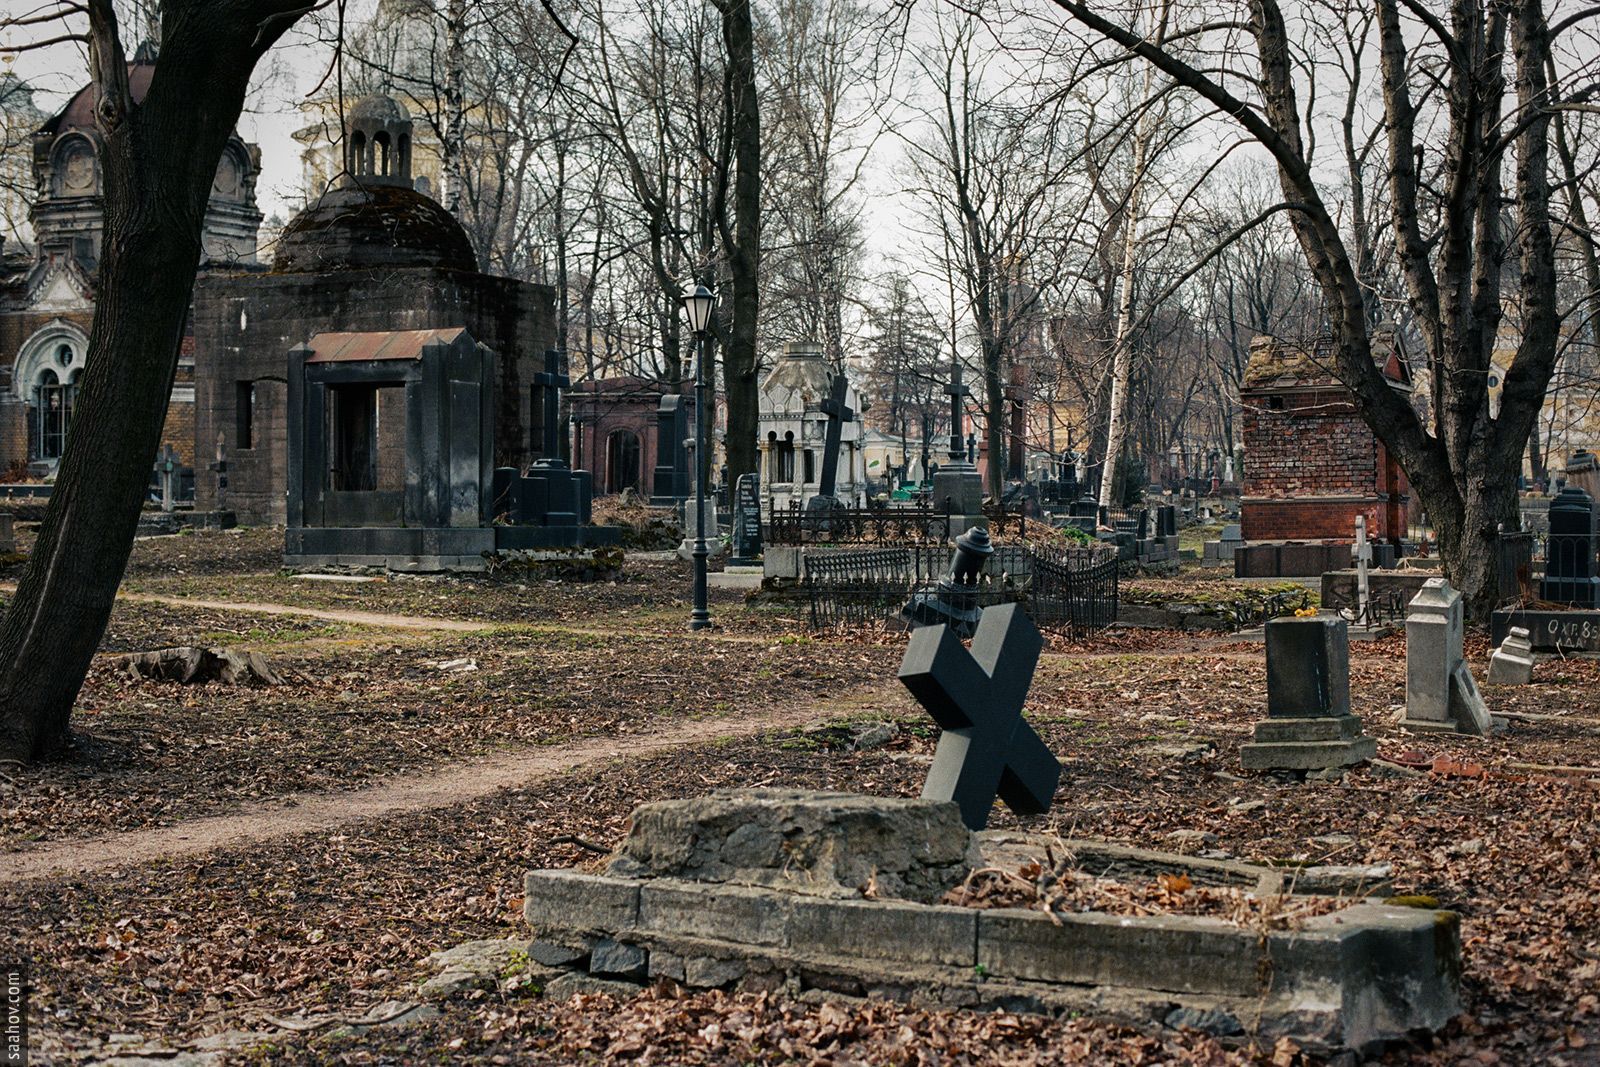 Никольское кладбище Александро-Невской Лавры